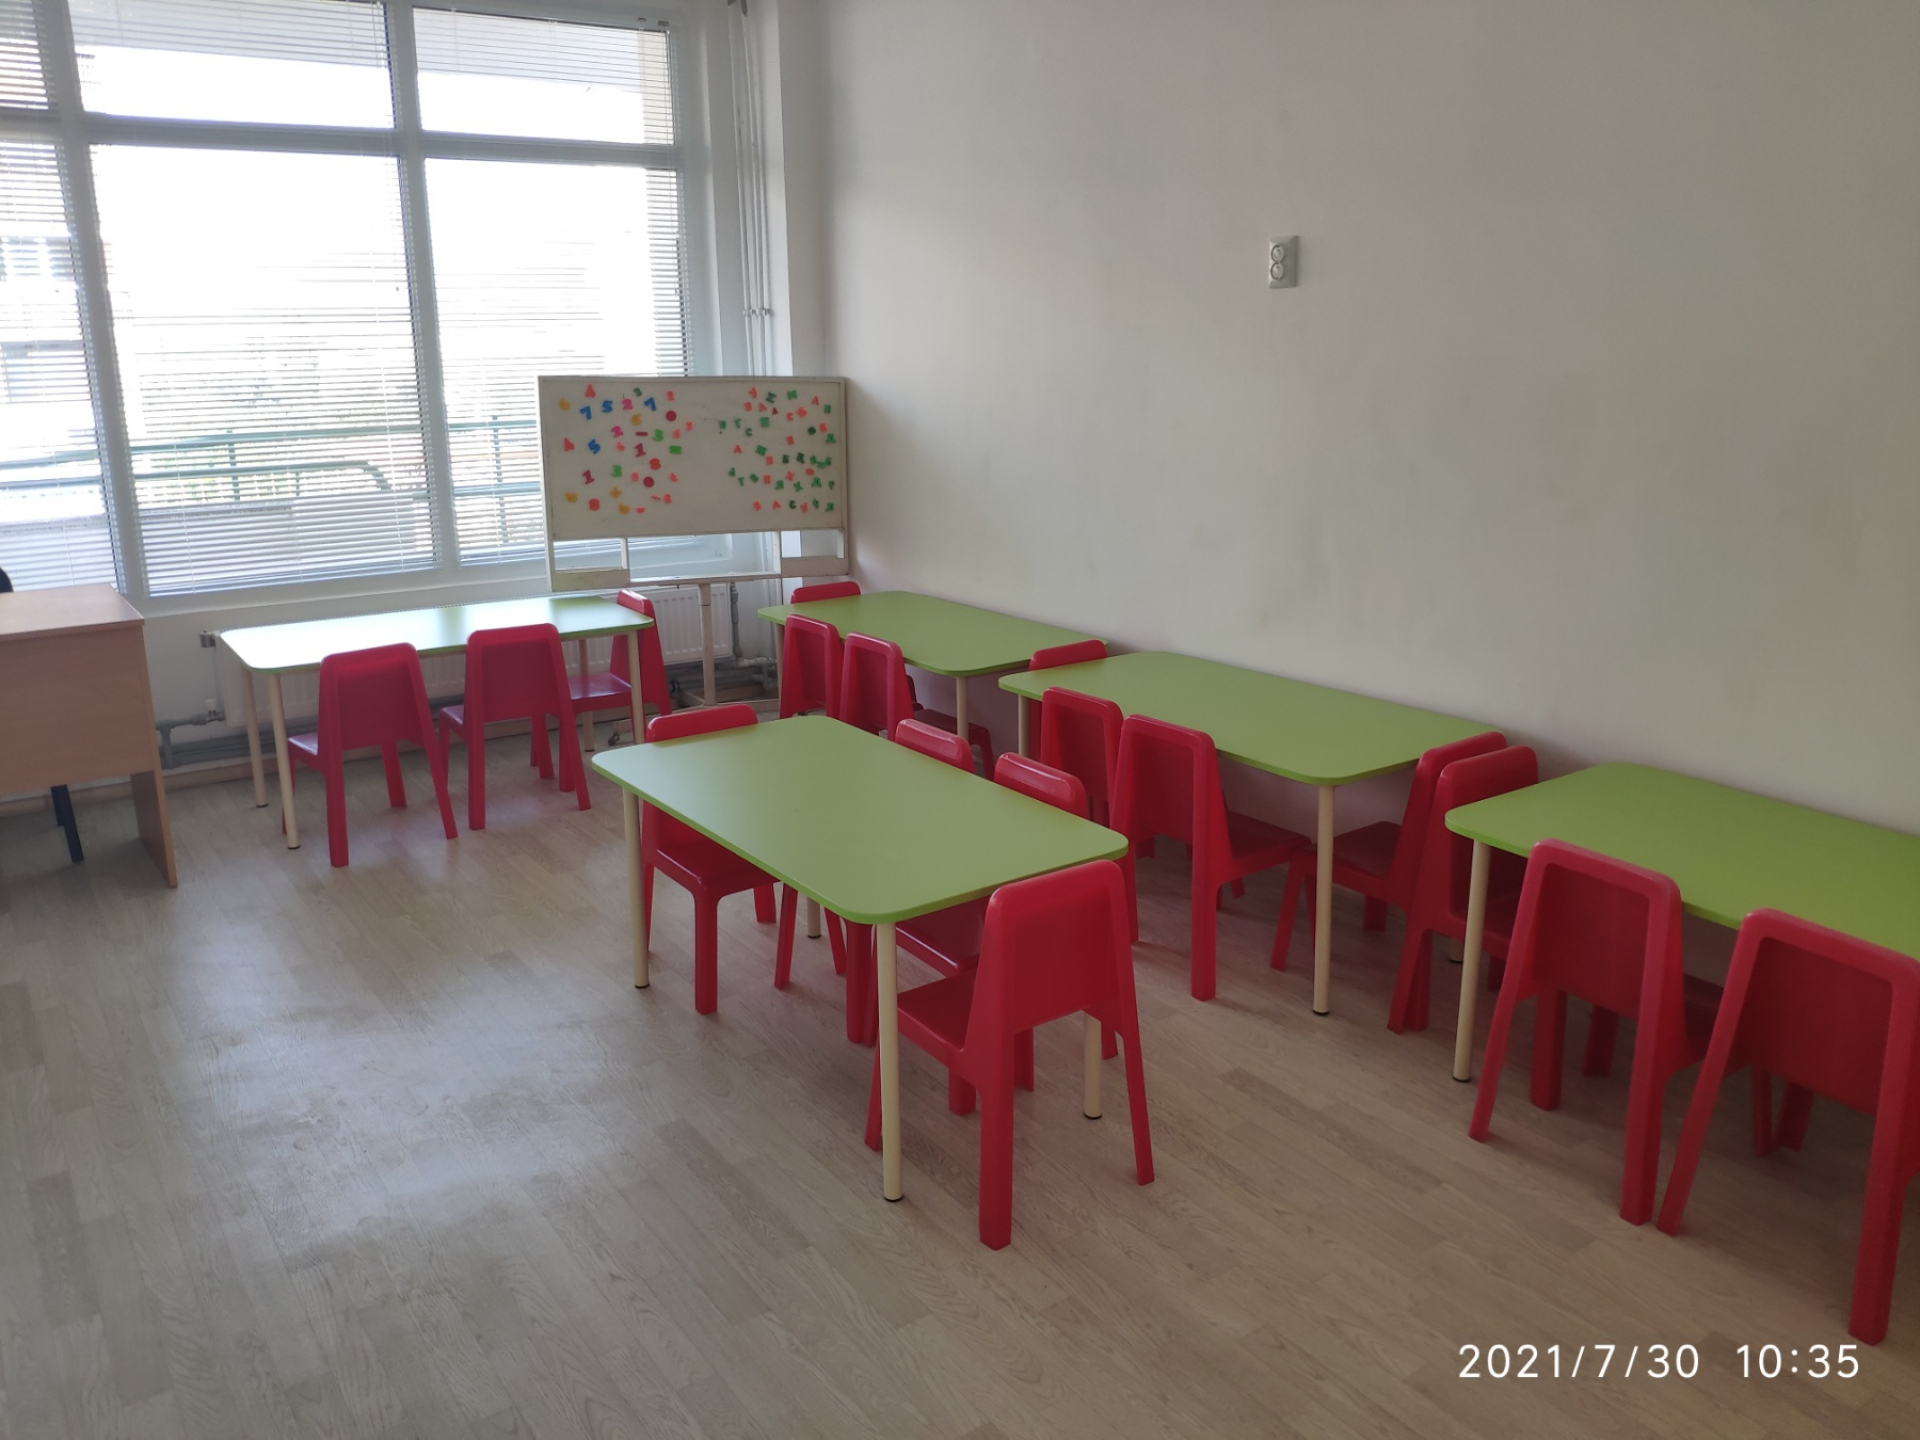 Детска градина „Дружба“ в Бобов Дол изцяло обновена благодарение на безвъзмездно финансиране по европейска програма и дарение от ТЕЦ Бобов Дол